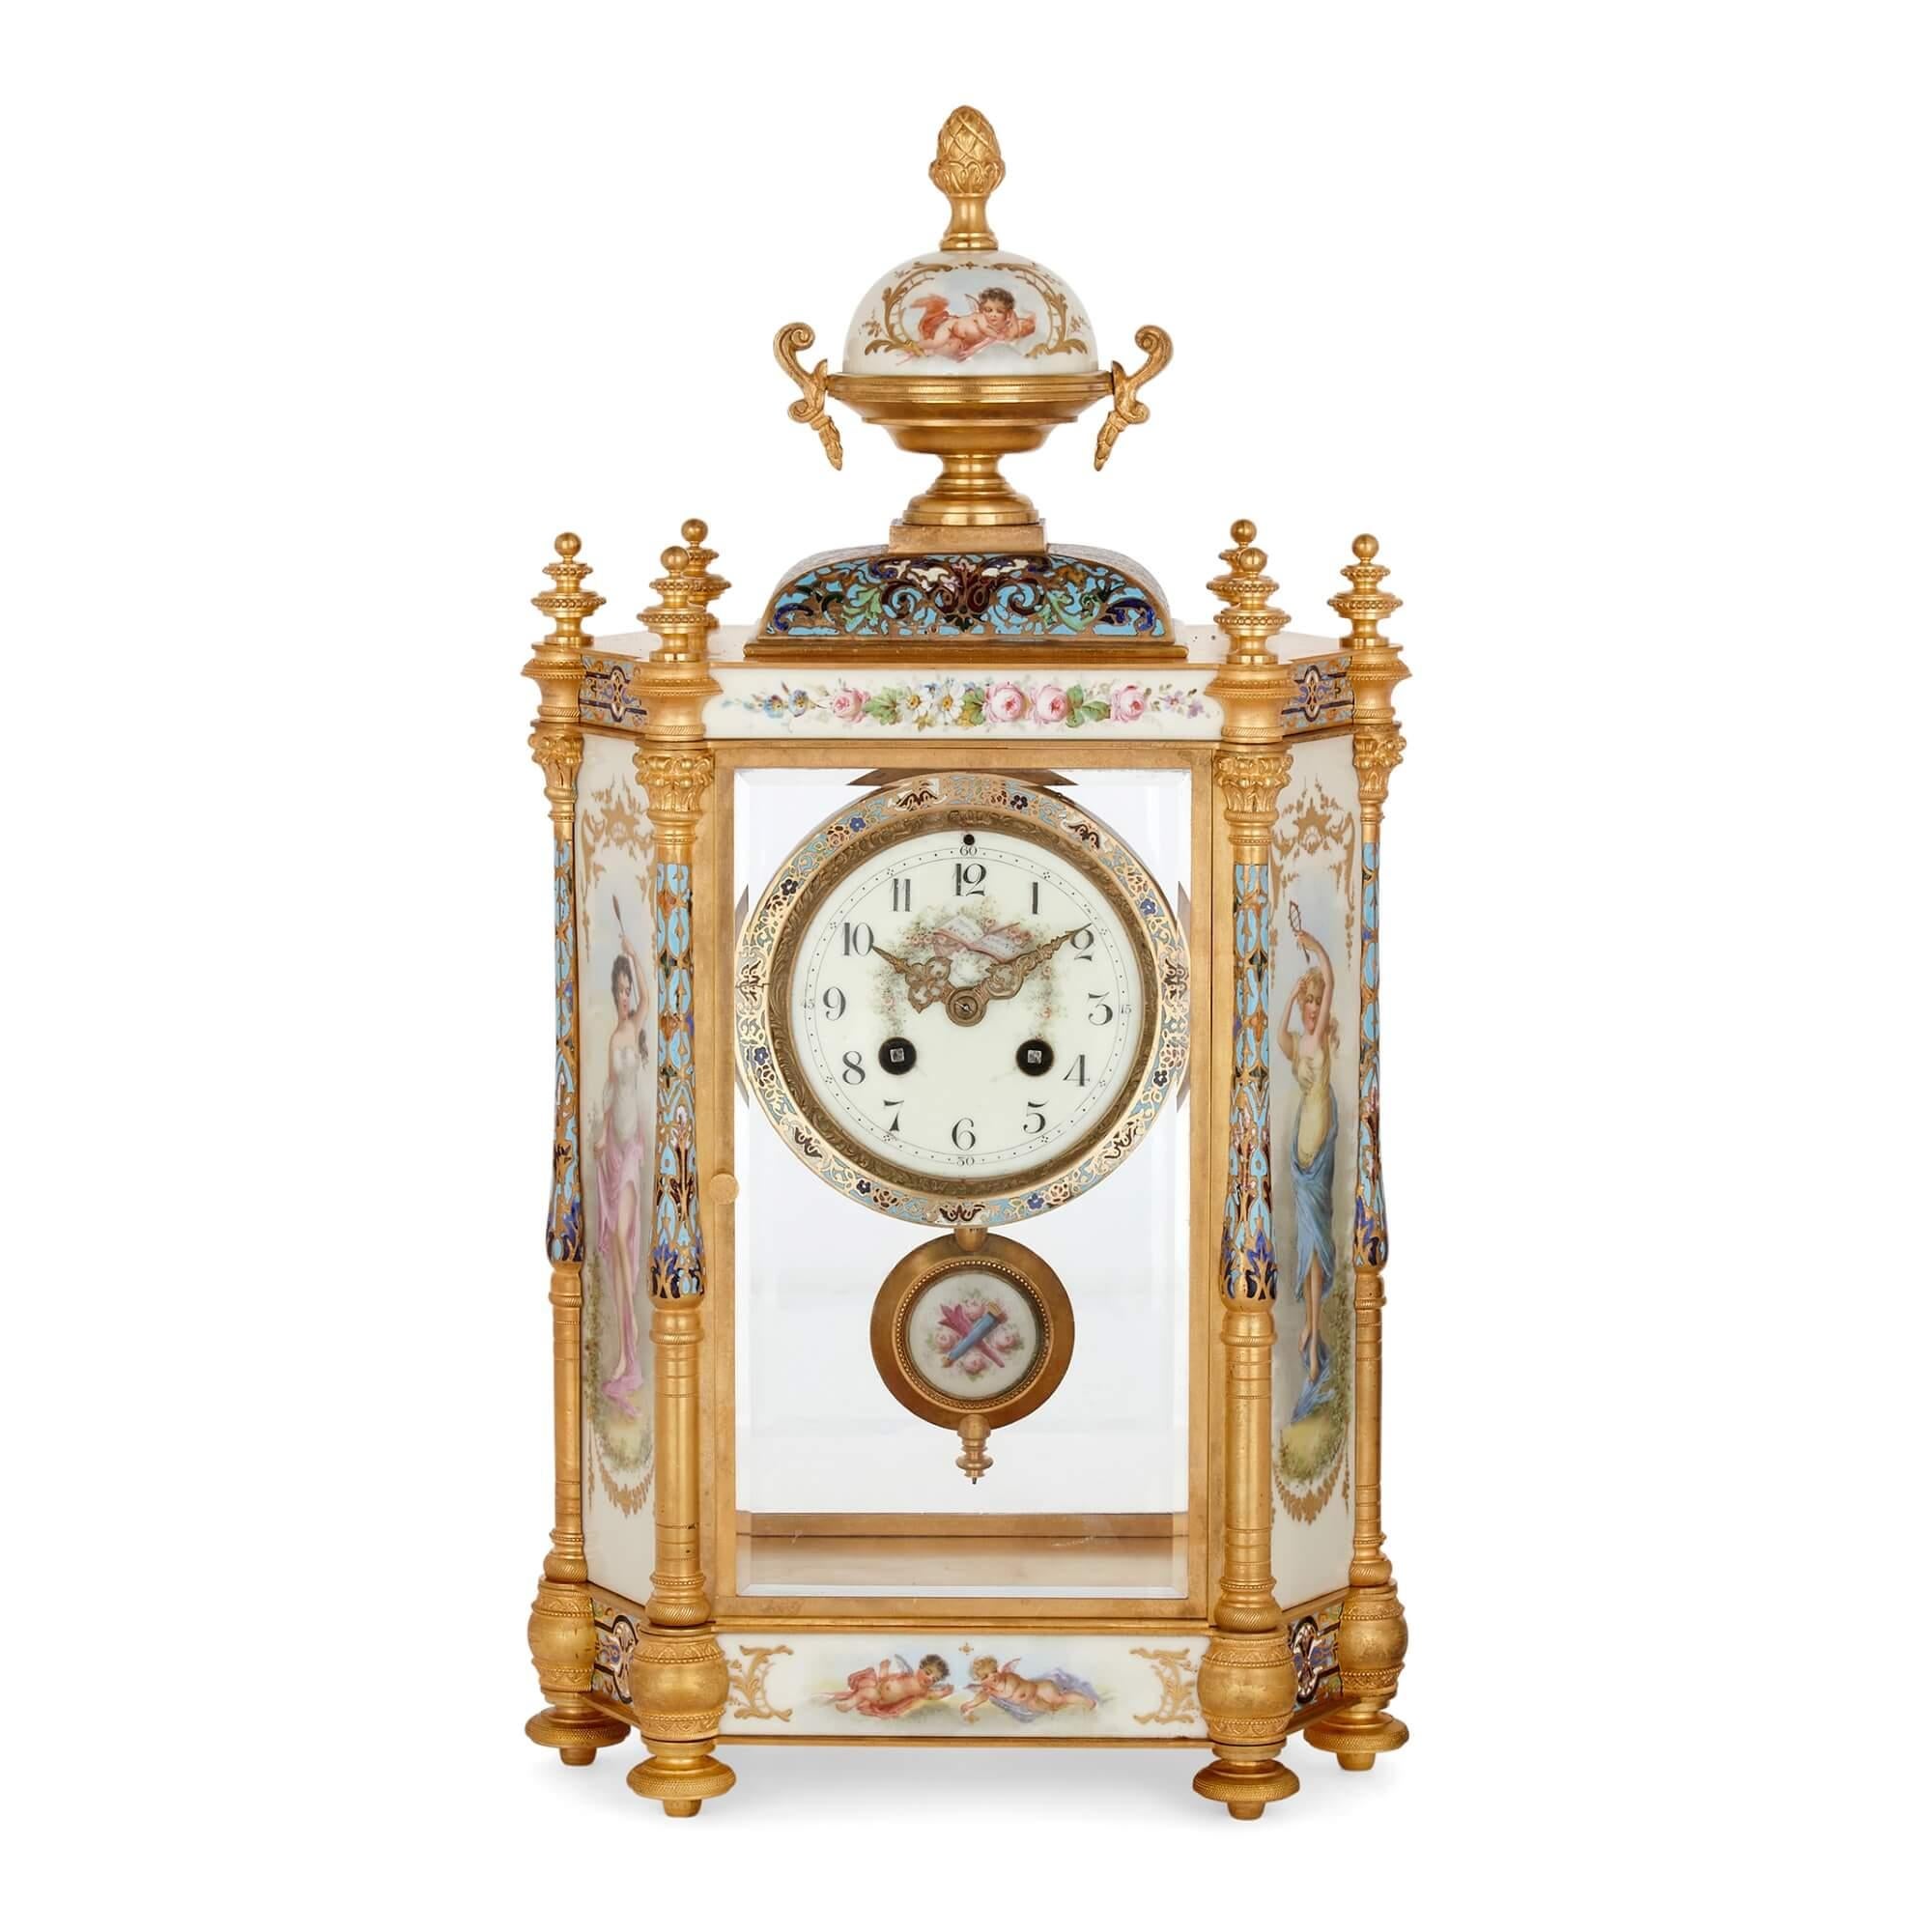 Großer dreiteiliger Uhrensatz aus Porzellan, Champlevé-Email und Ormolu
Französisch, Ende 19. Jahrhundert
Maße: Uhr: Höhe 46cm, Breite 25cm, Tiefe 15cm
Vasen: Höhe 38cm, Breite 14cm, Tiefe 11cm

Dieses außergewöhnliche antike Uhrenset besteht